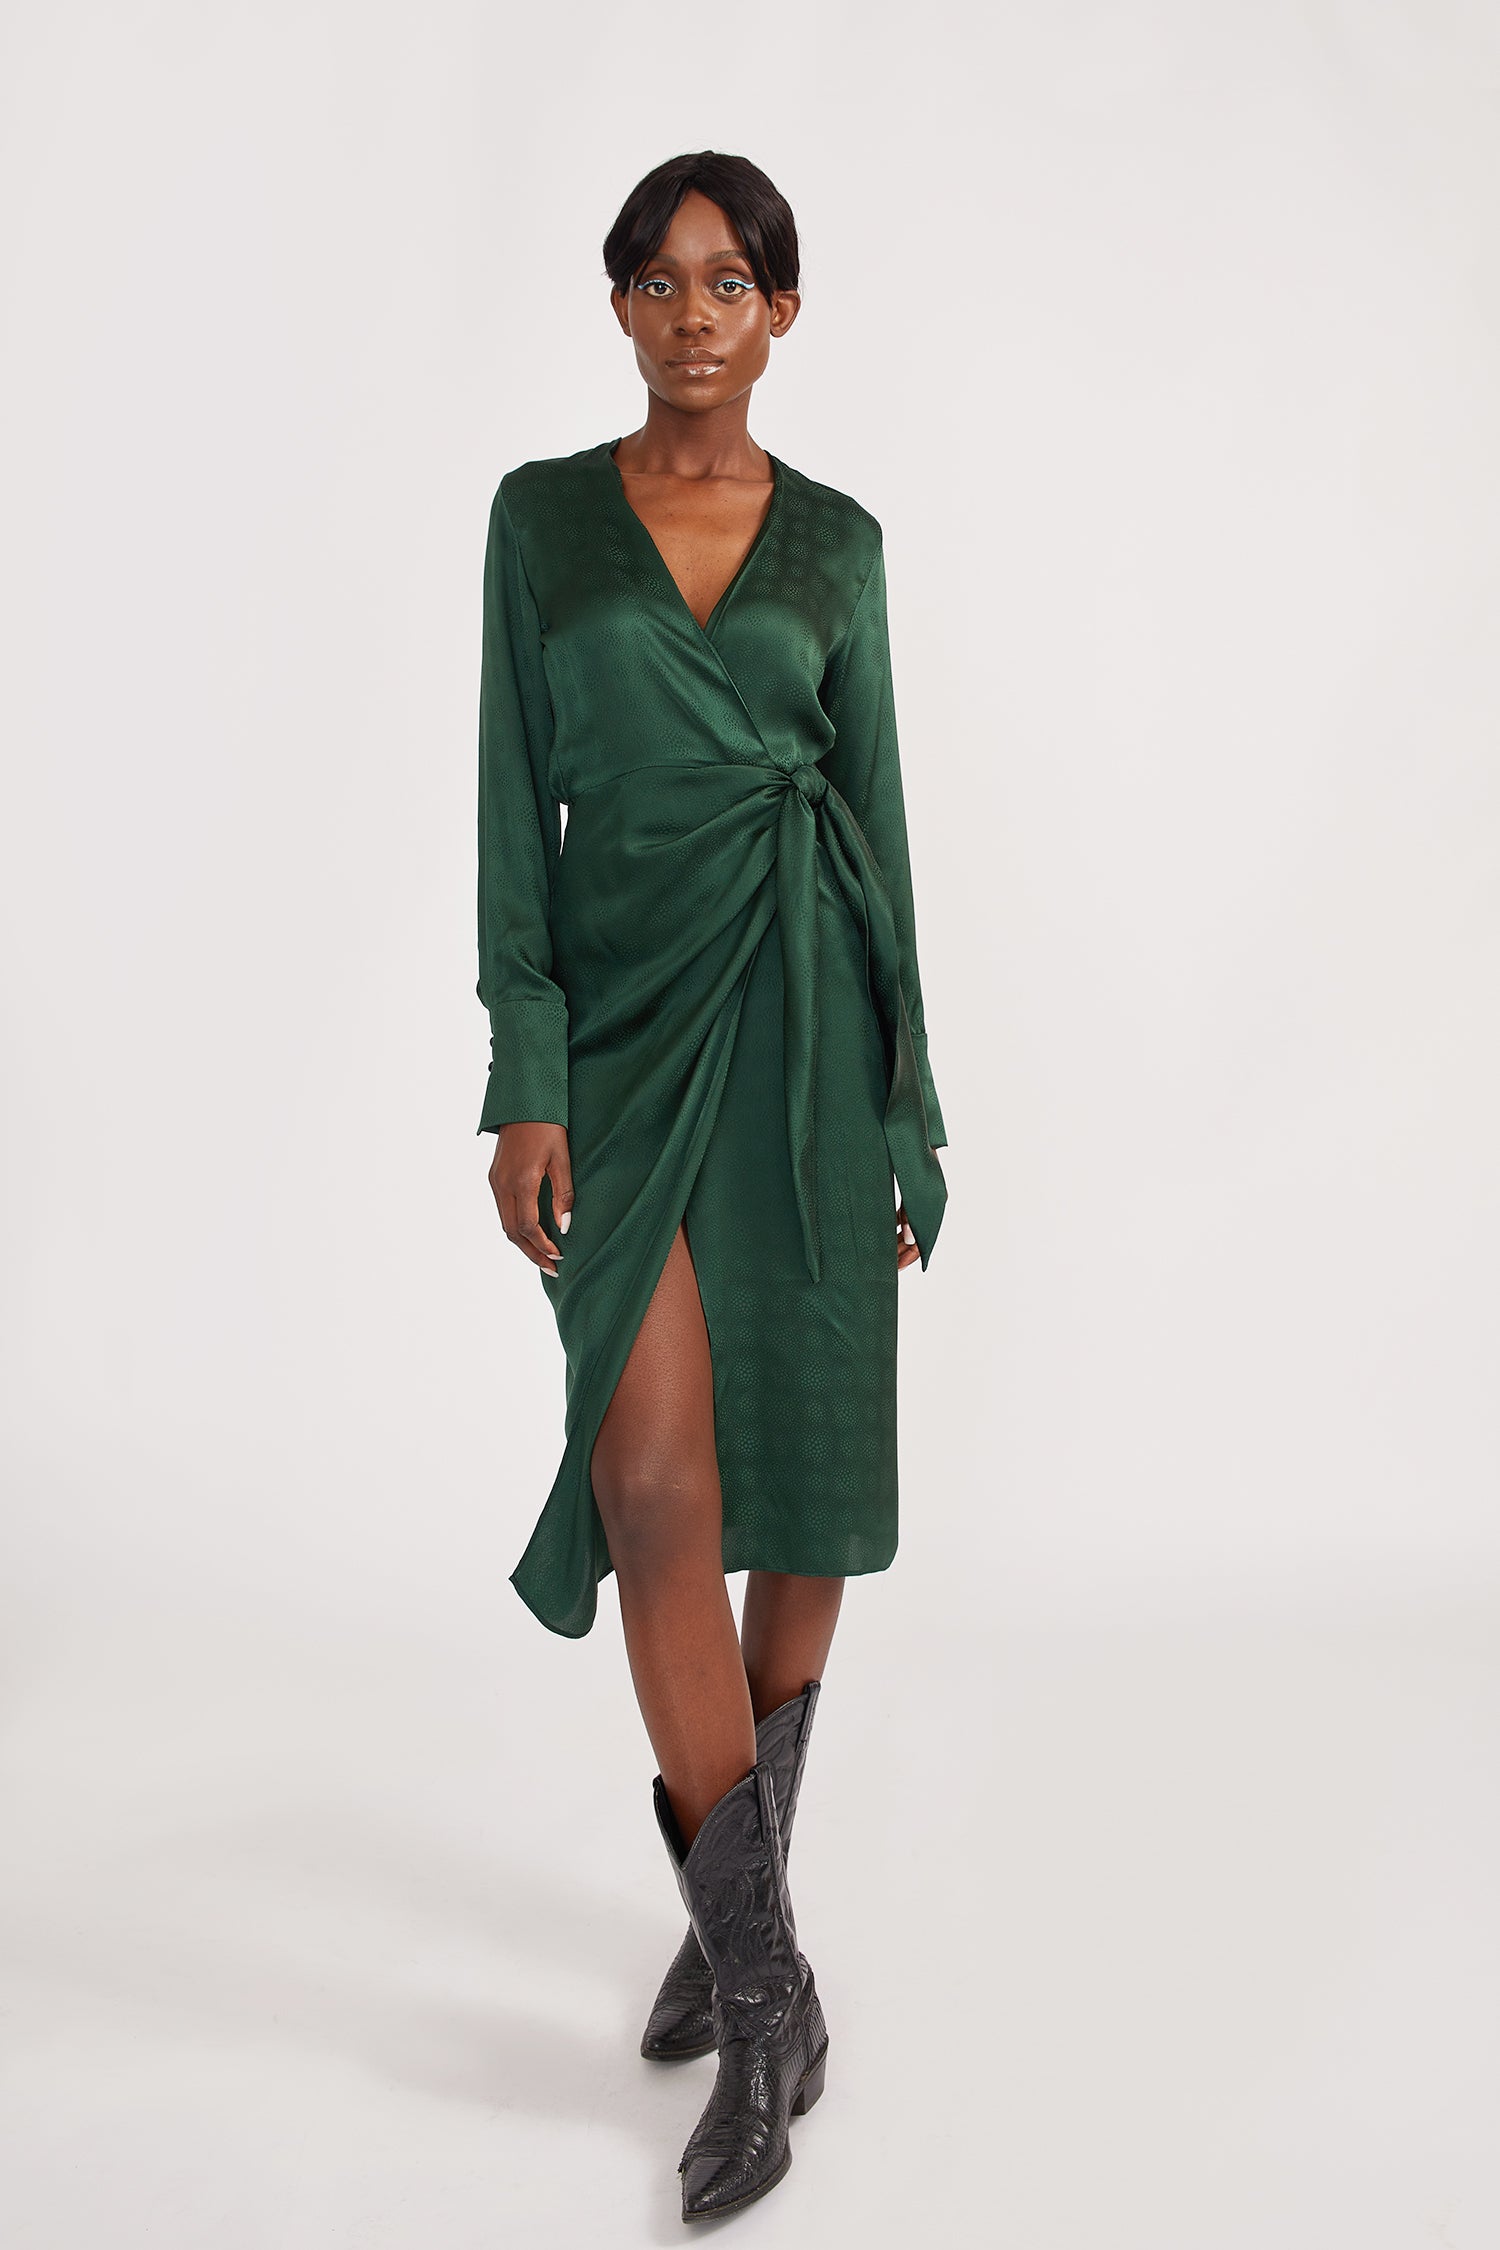 Wrap Dress in Forest Green • Alyson Eastman